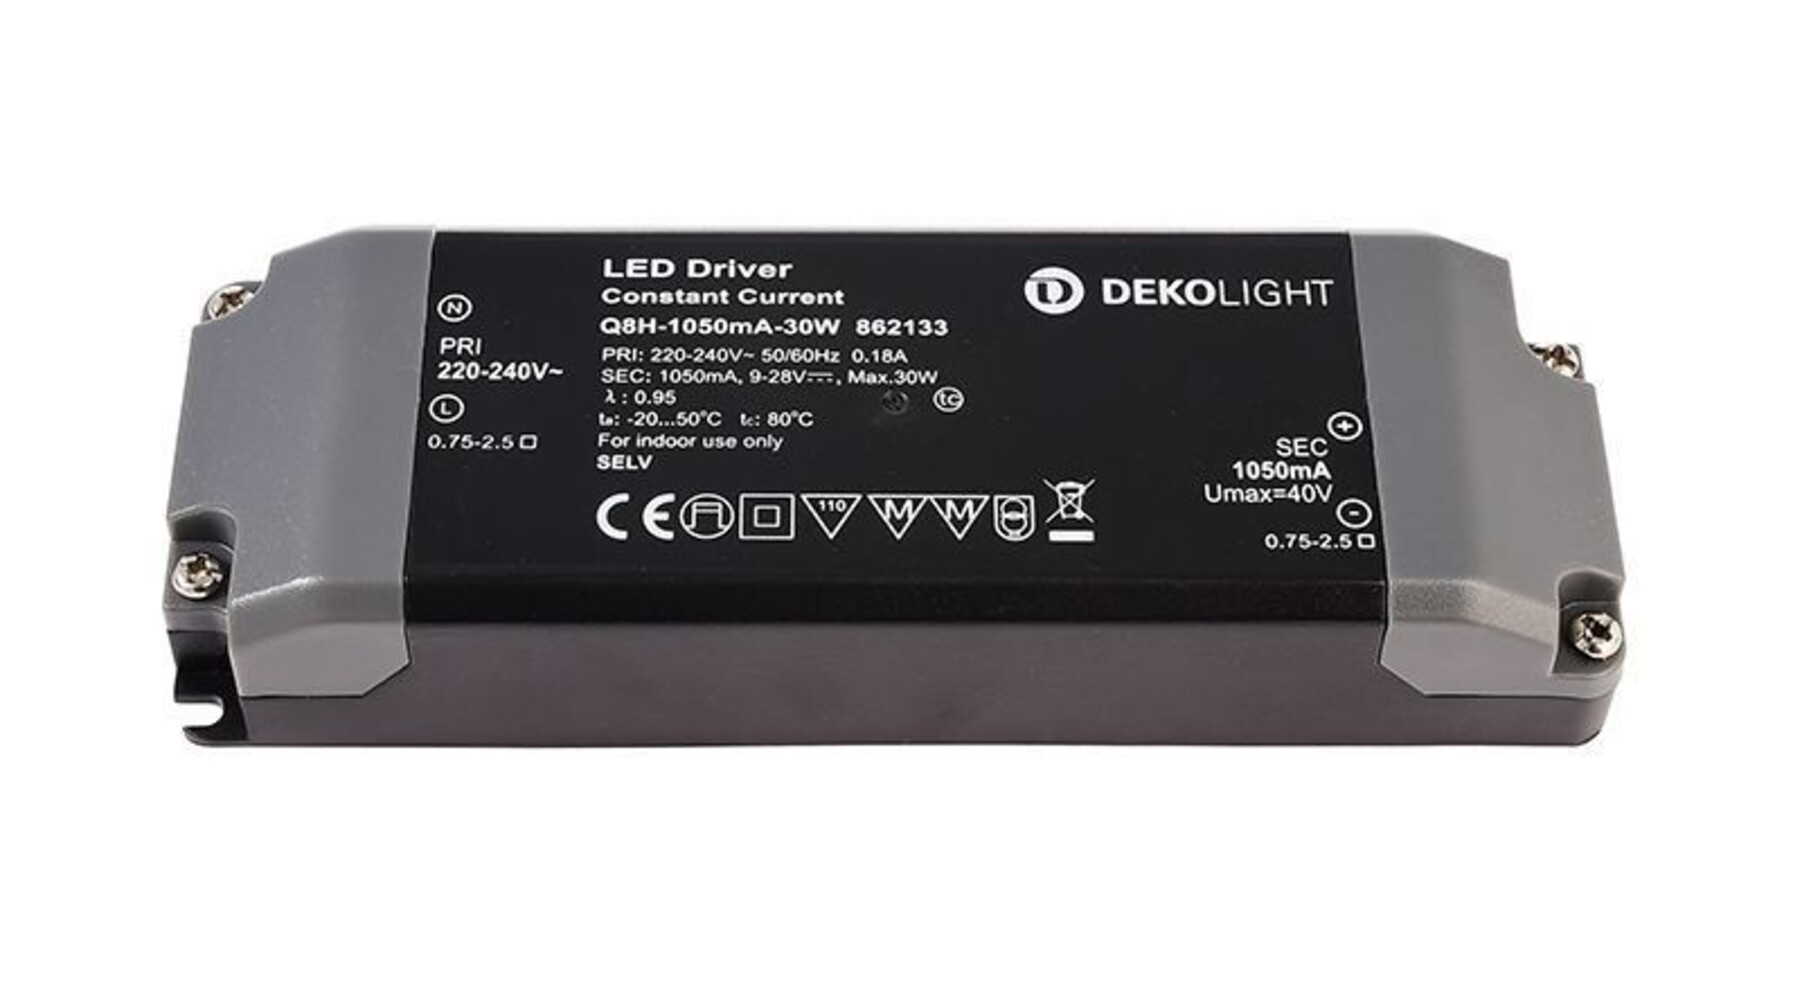 Hochwertiges und stromkonstantes LED Netzteil von Deko-Light